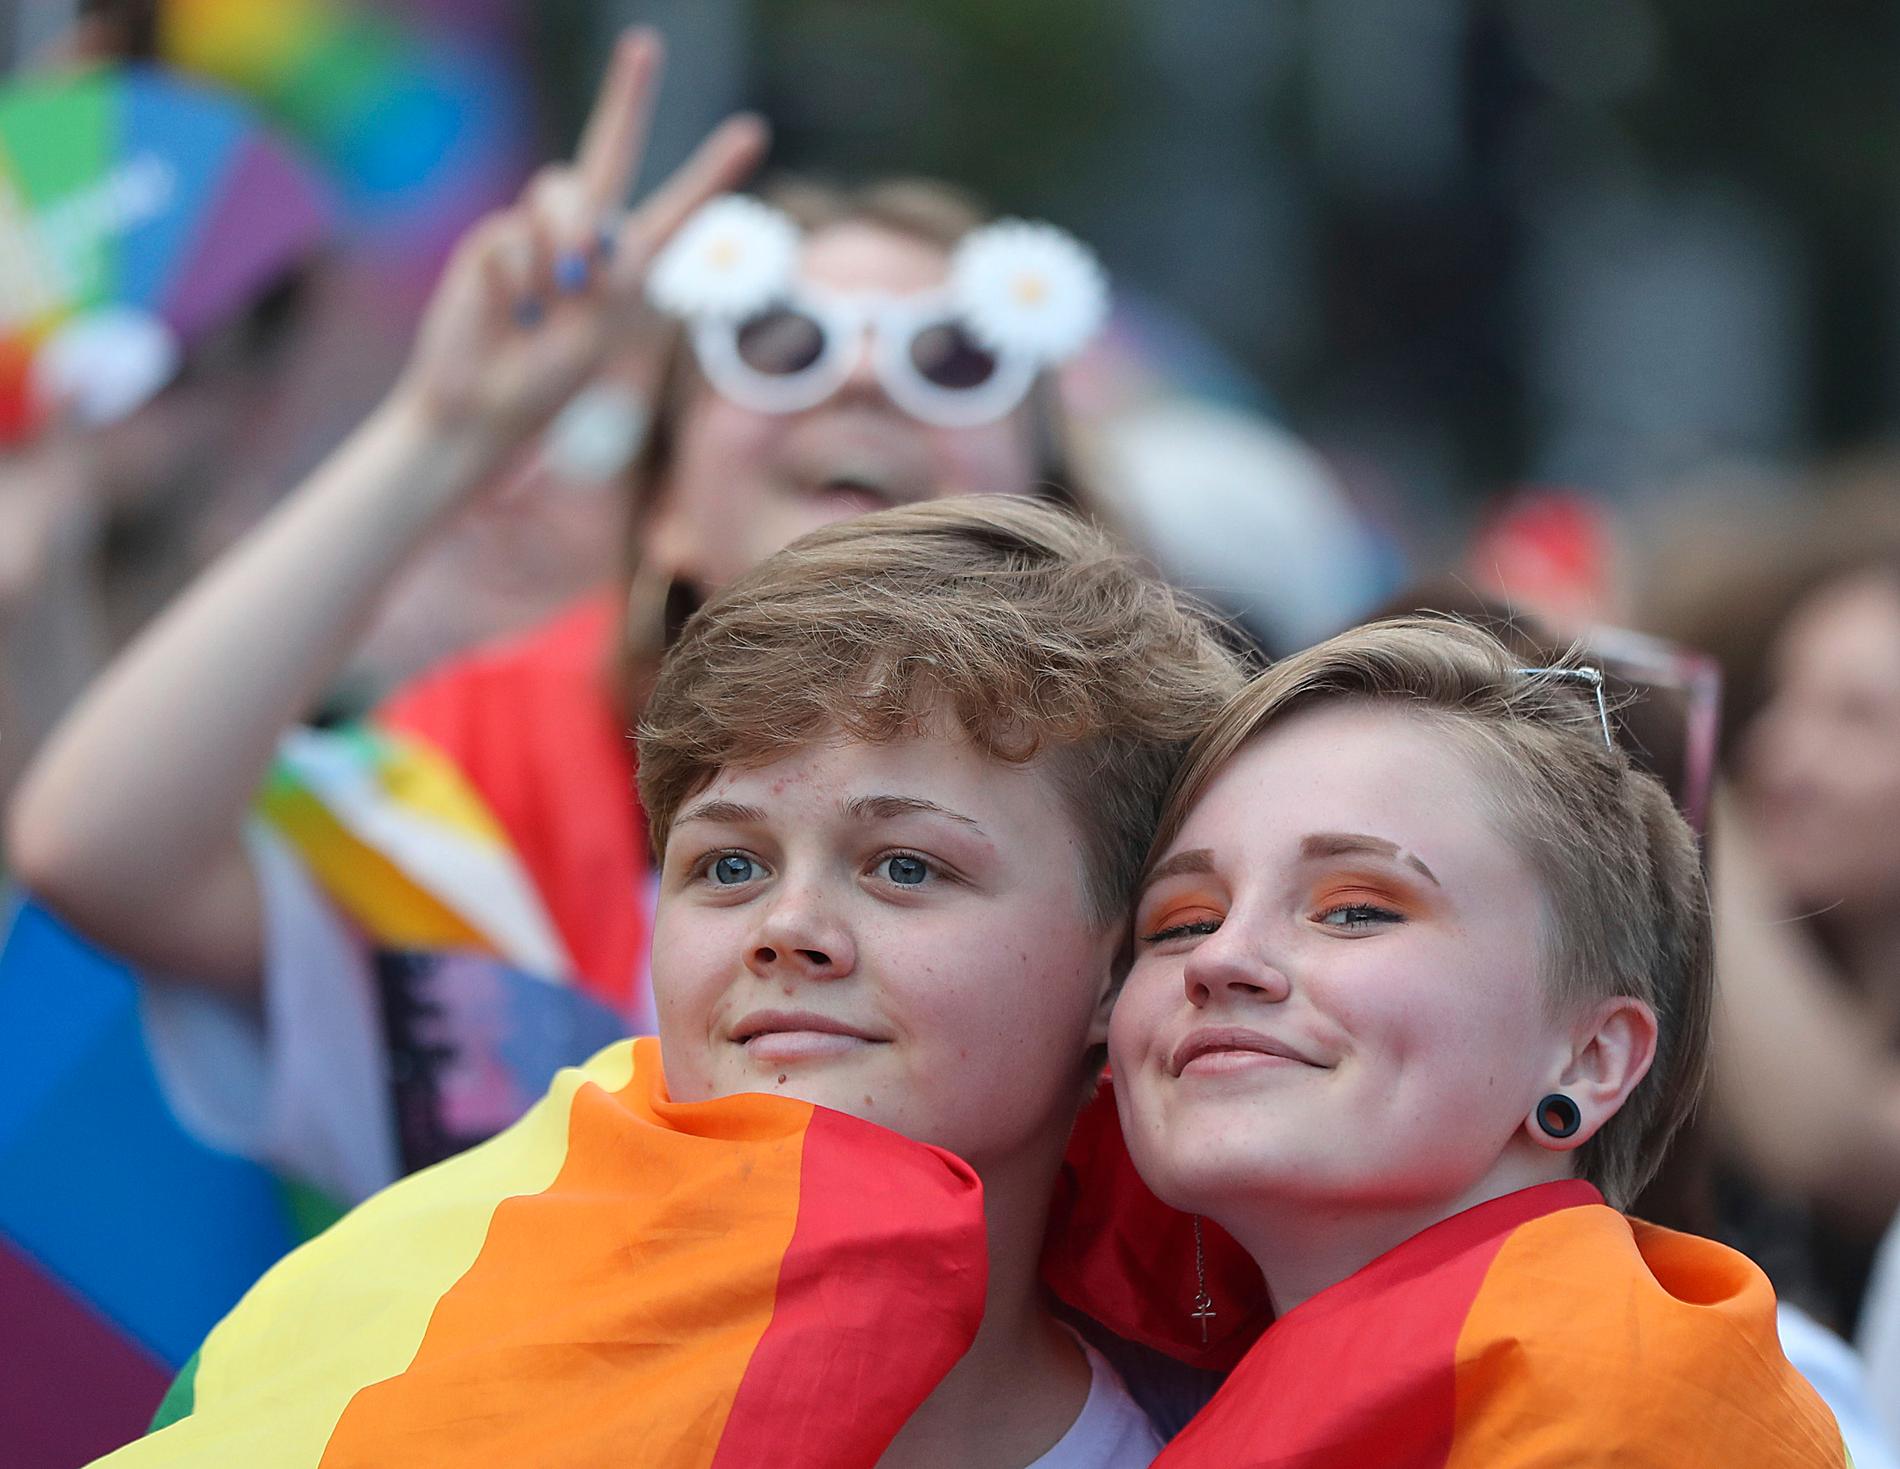 Stolta deltagare i 2019 års prideparad i Warszawa, Polen. Landet får nu kritik för hur man behandlar hbtq-personer. Arkivbild.